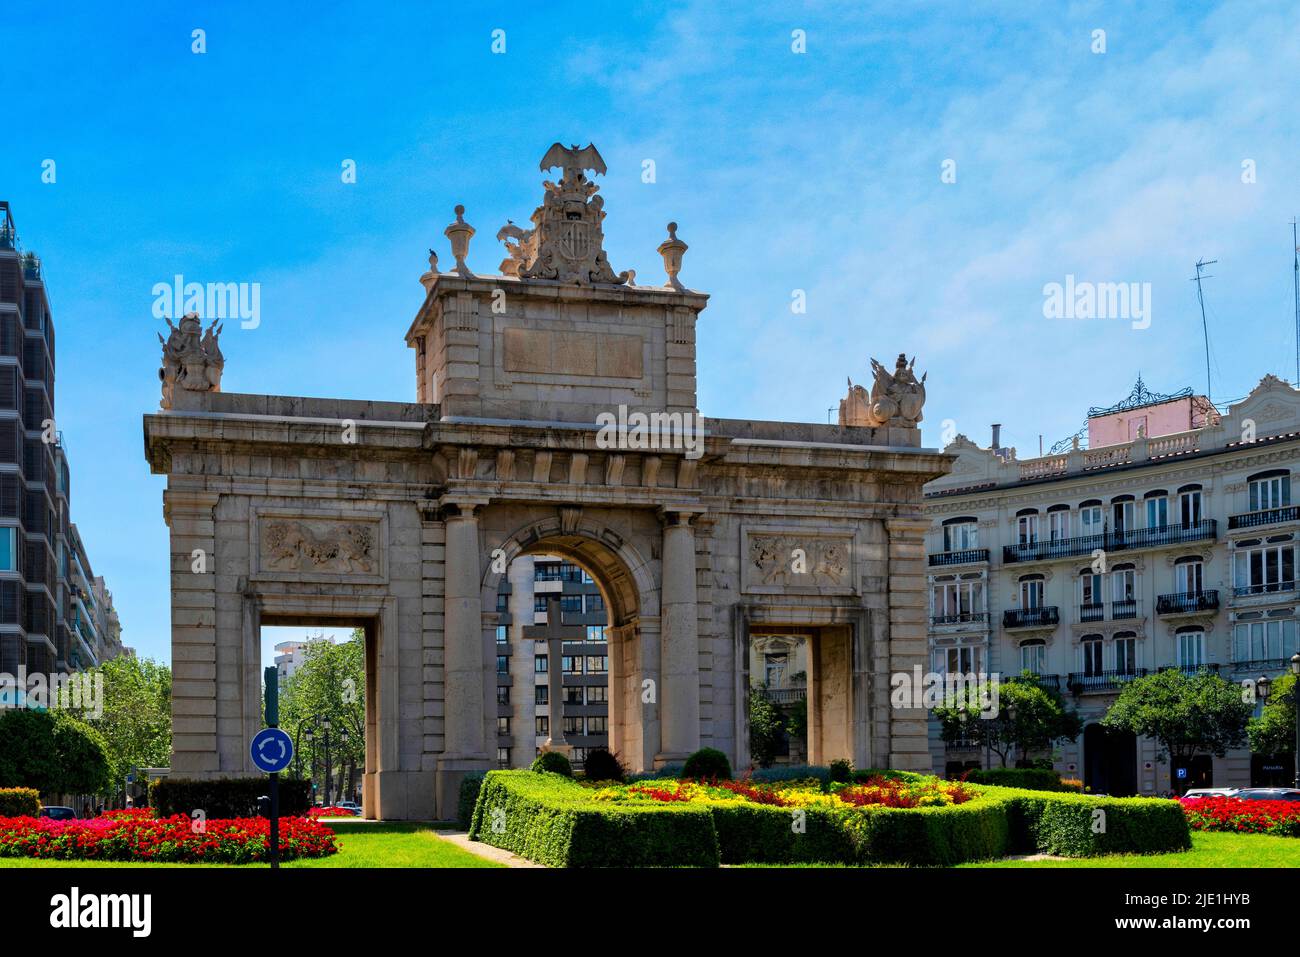 Porta de la mar (Sea Gate) in Valencia, Spain Stock Photo